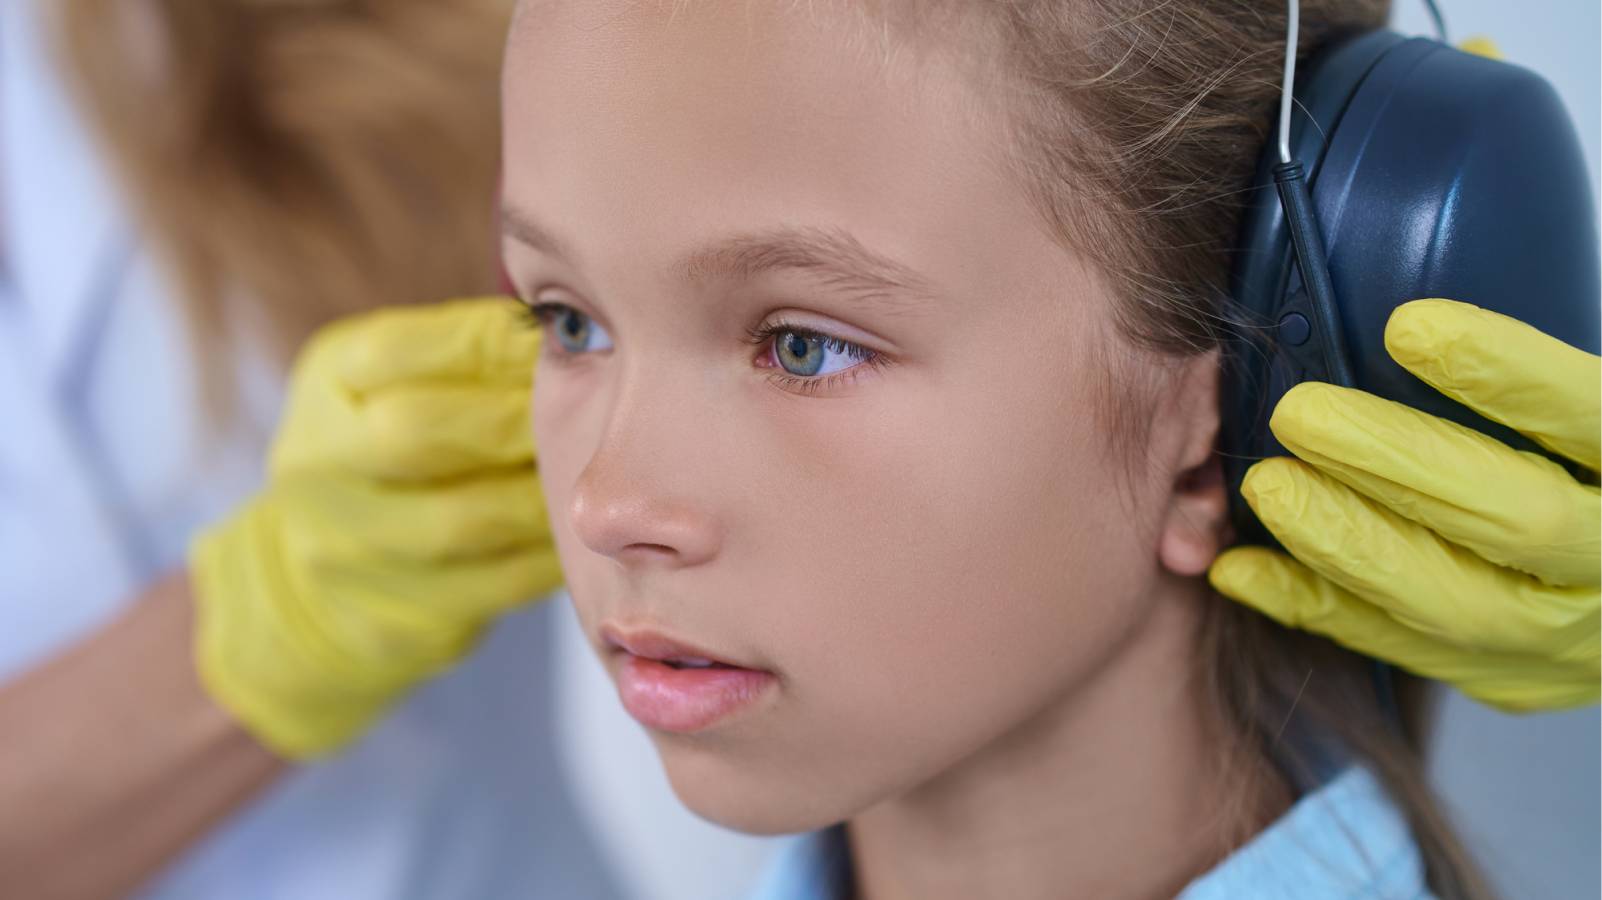 【海外論文】マクロライド系抗菌薬の経口投与､ 小児の感音性難聴リスク増加と関係か